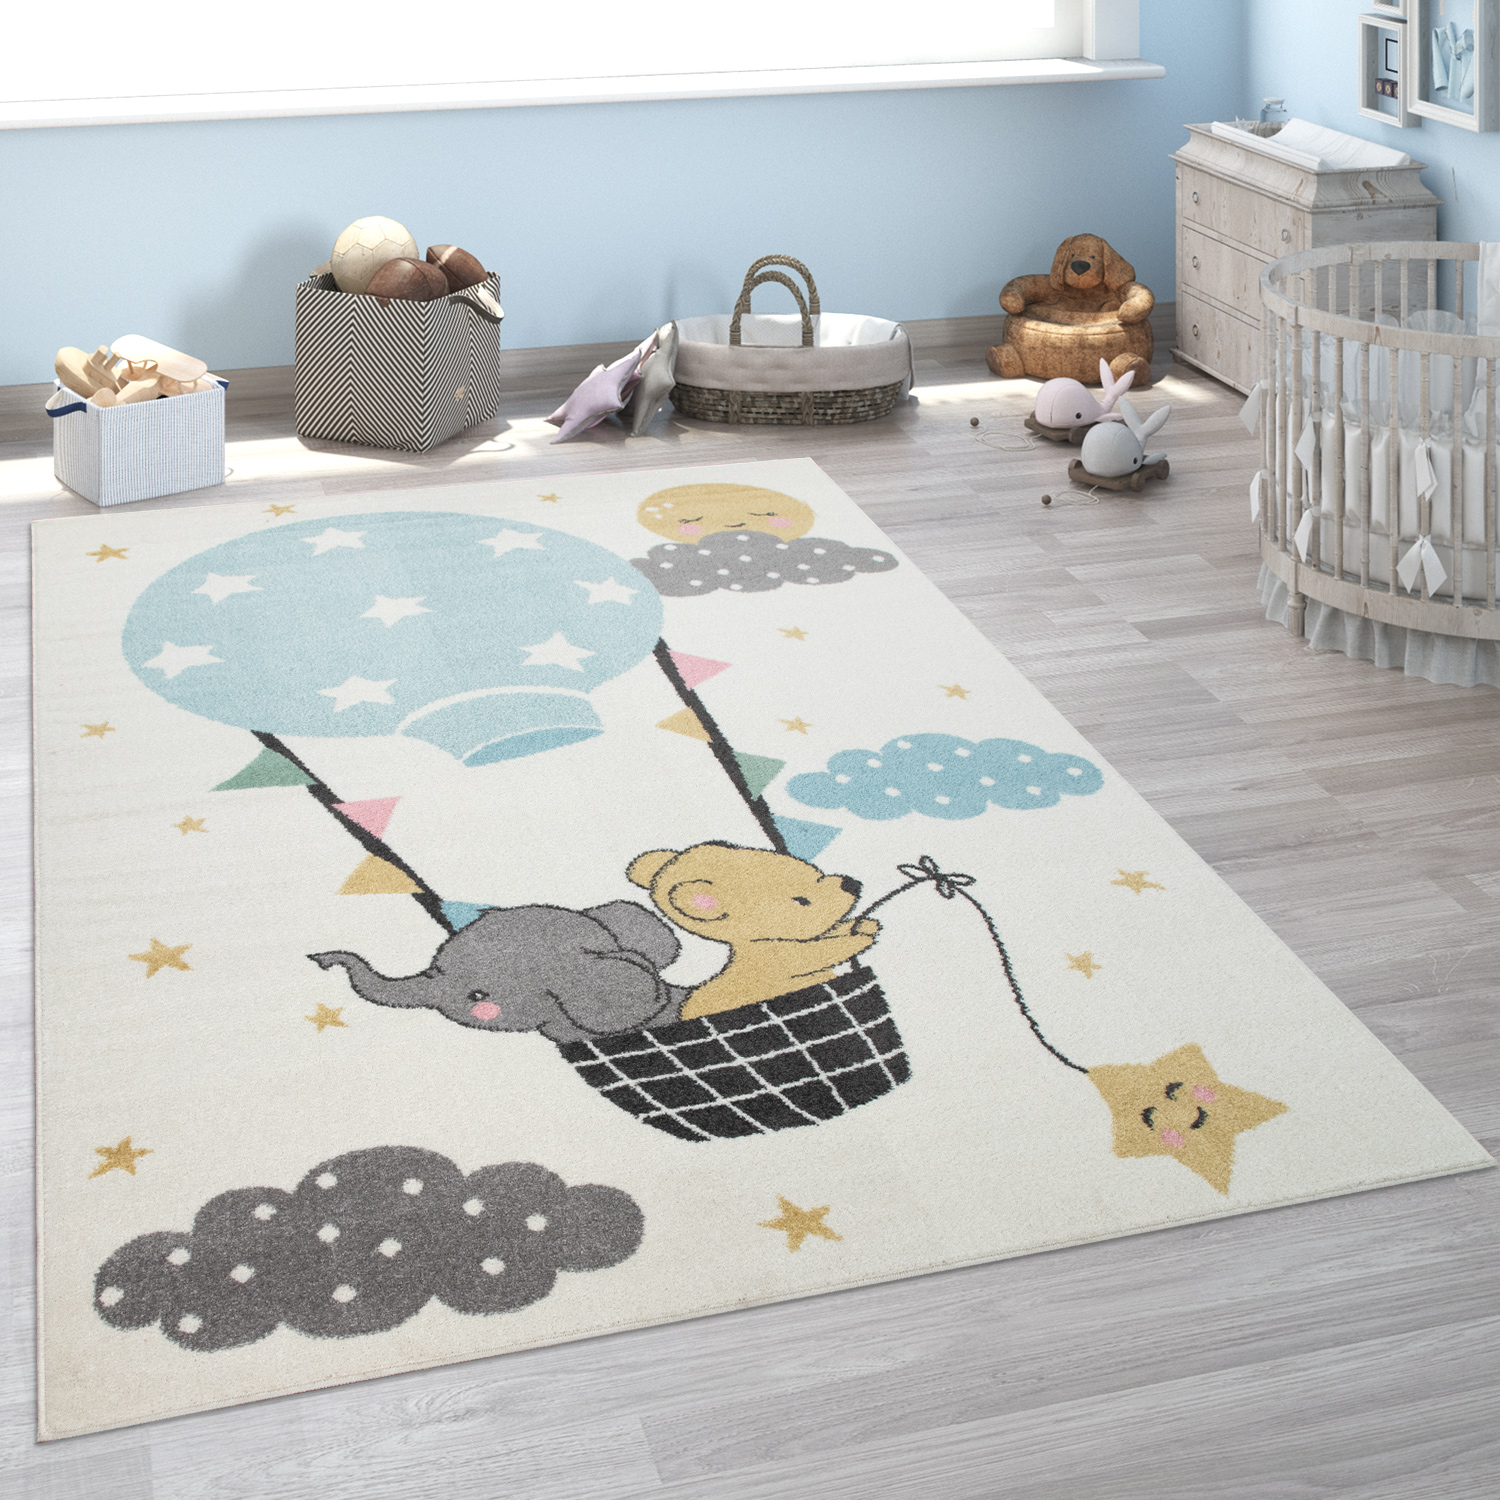 Kinder-Teppich Kinderzimmer Elefant Bär Mond Beige Mit Motiv